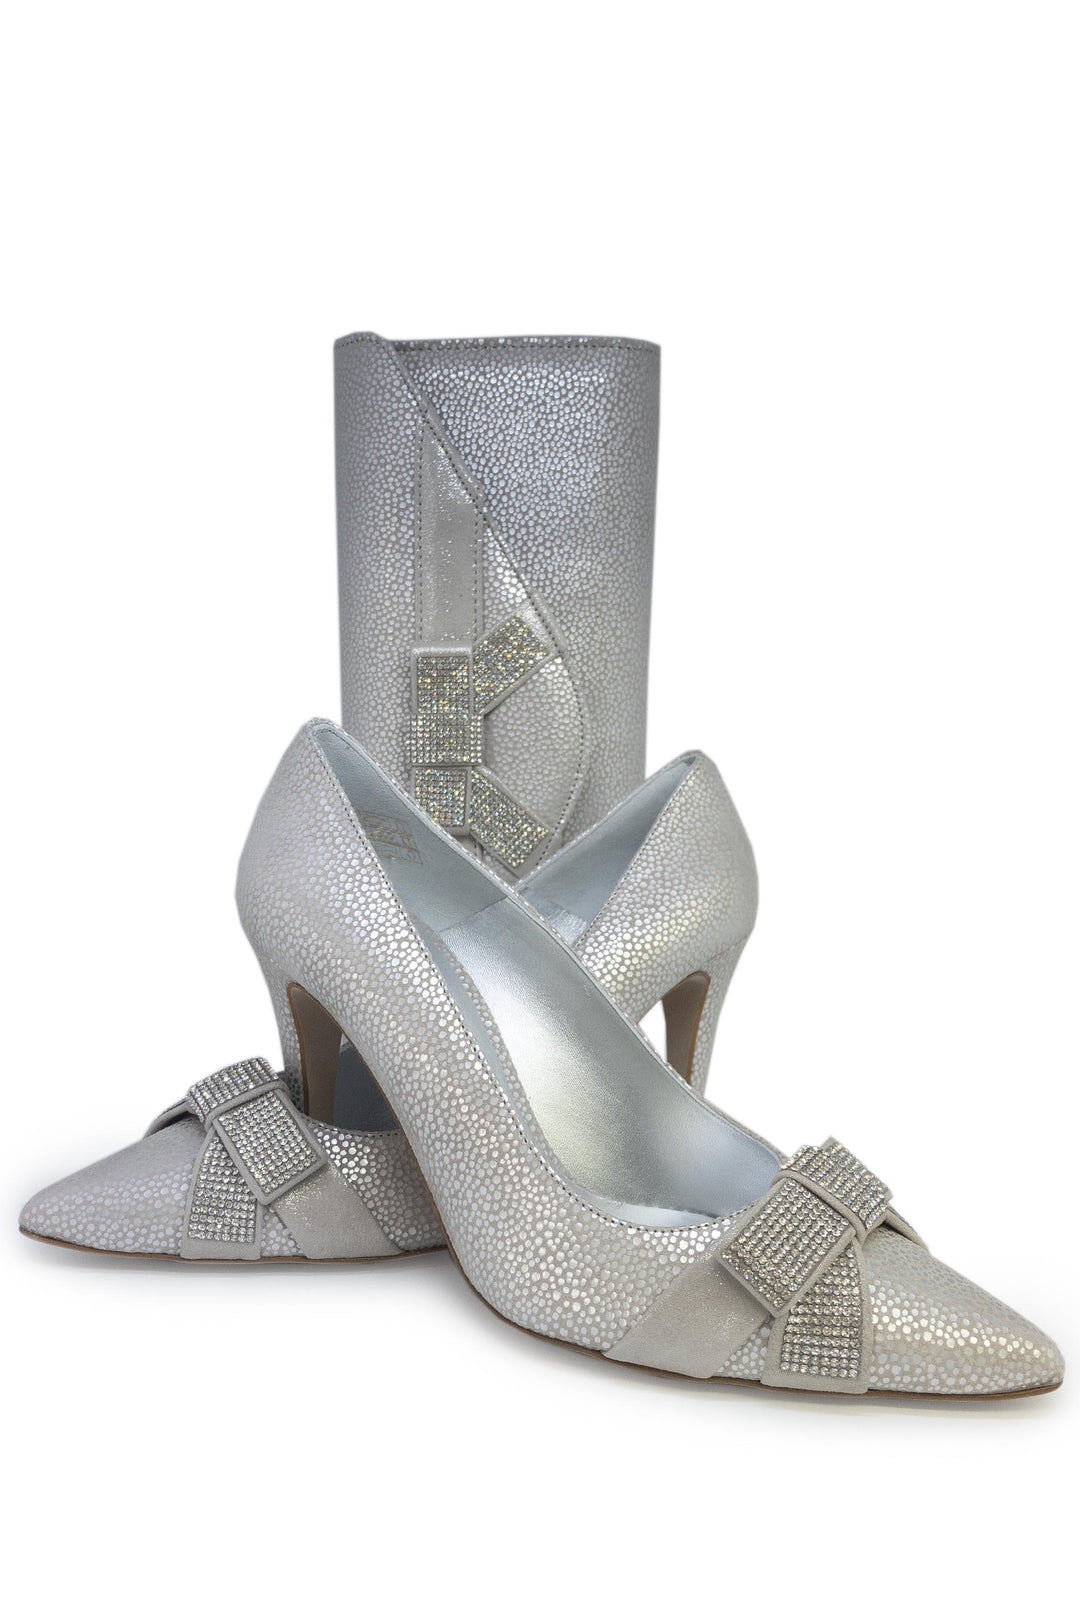 Elegante Kendra Starla Shoe and Bag Set Silver - Shoes and Bags Bag, Elegante, Shoes, Silver, Special Occasion ginasmartboutique